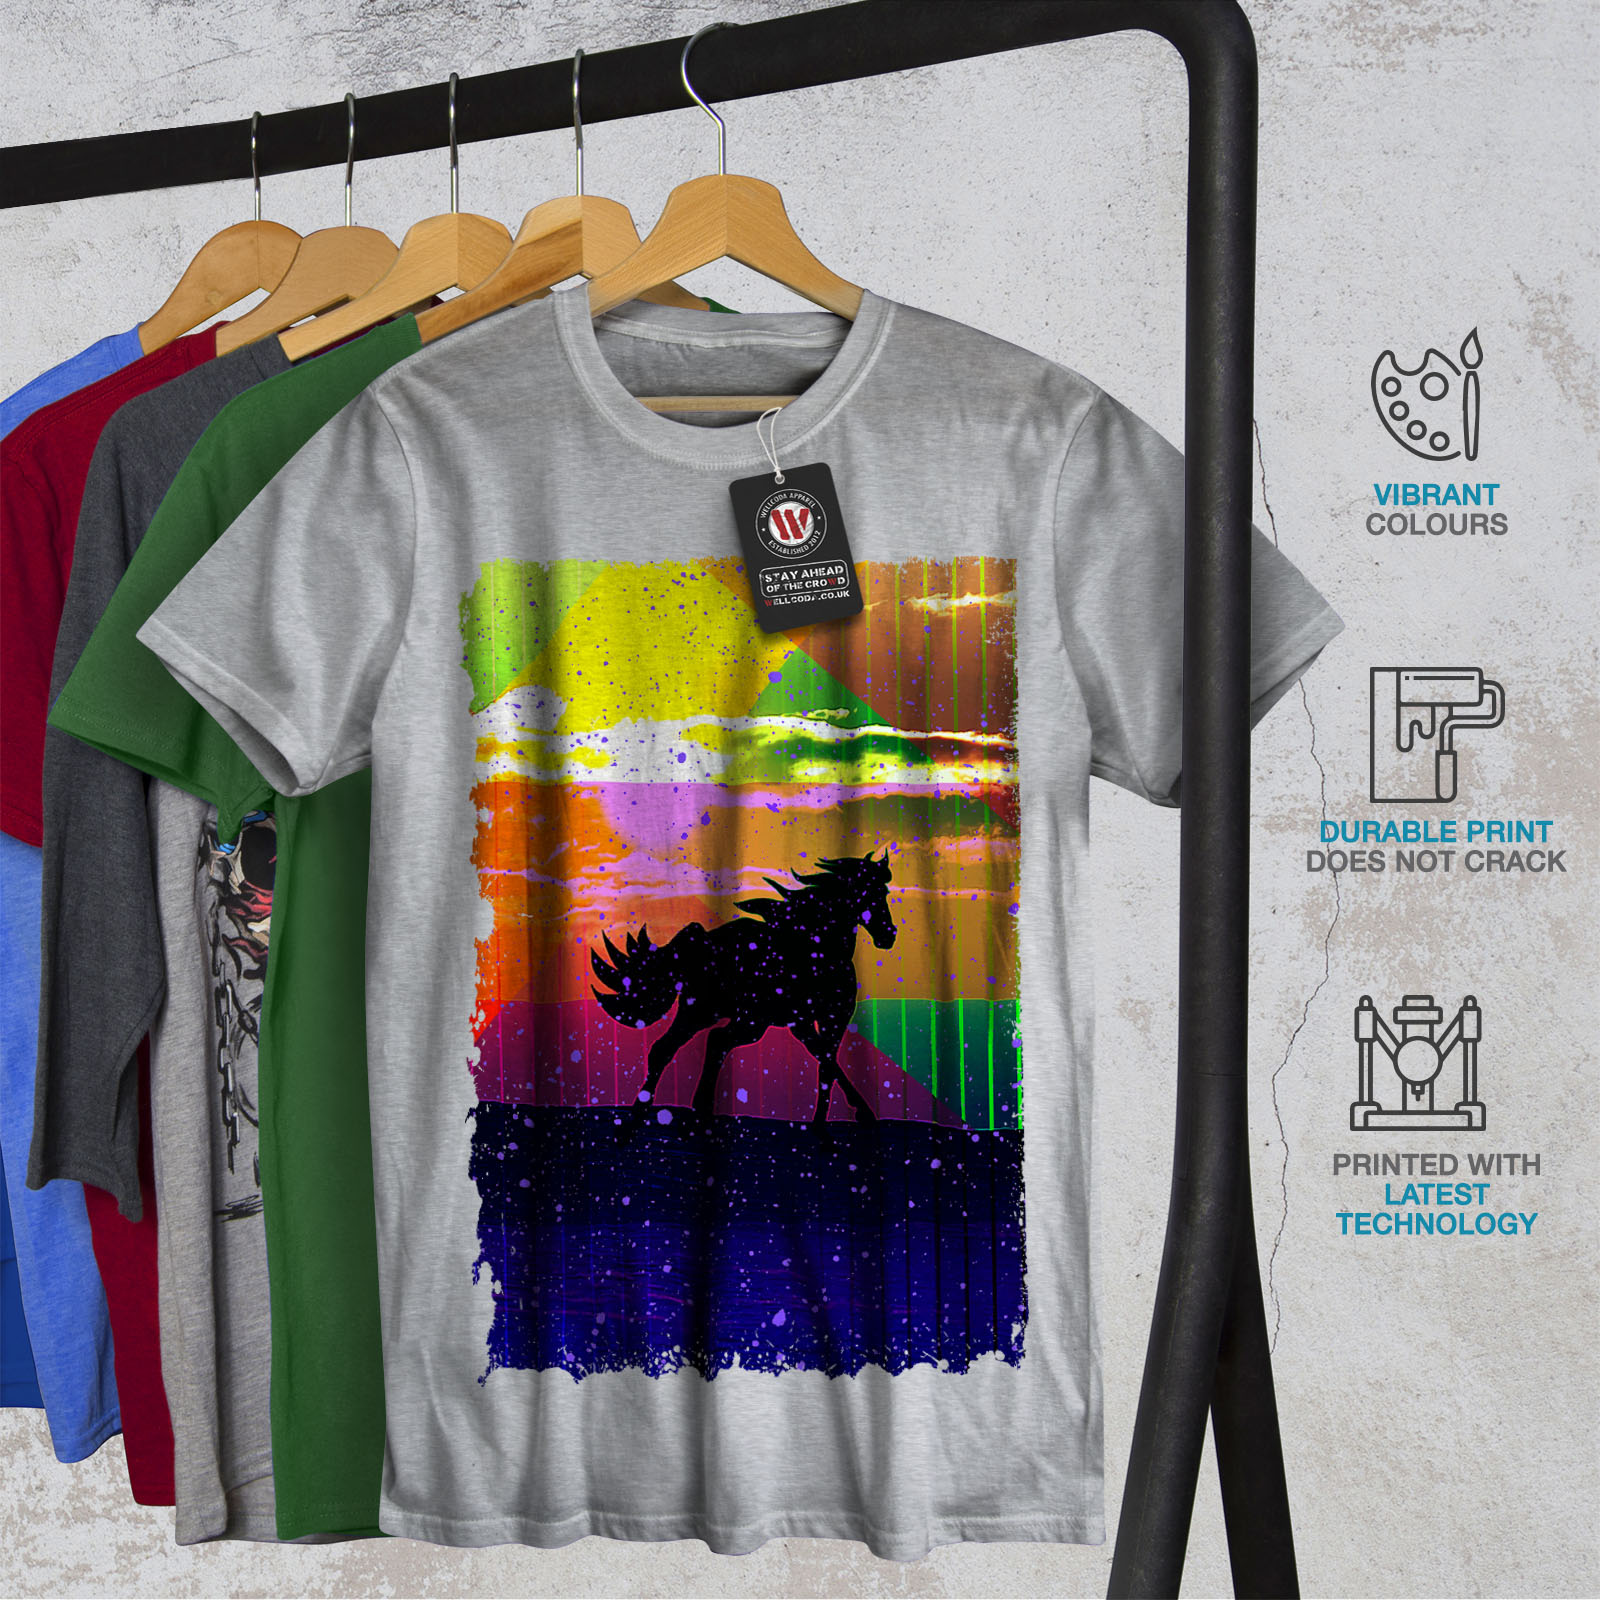 Wellcoda cheval art abstrait T-shirt homme couleur de conception graphique imprimé Tee